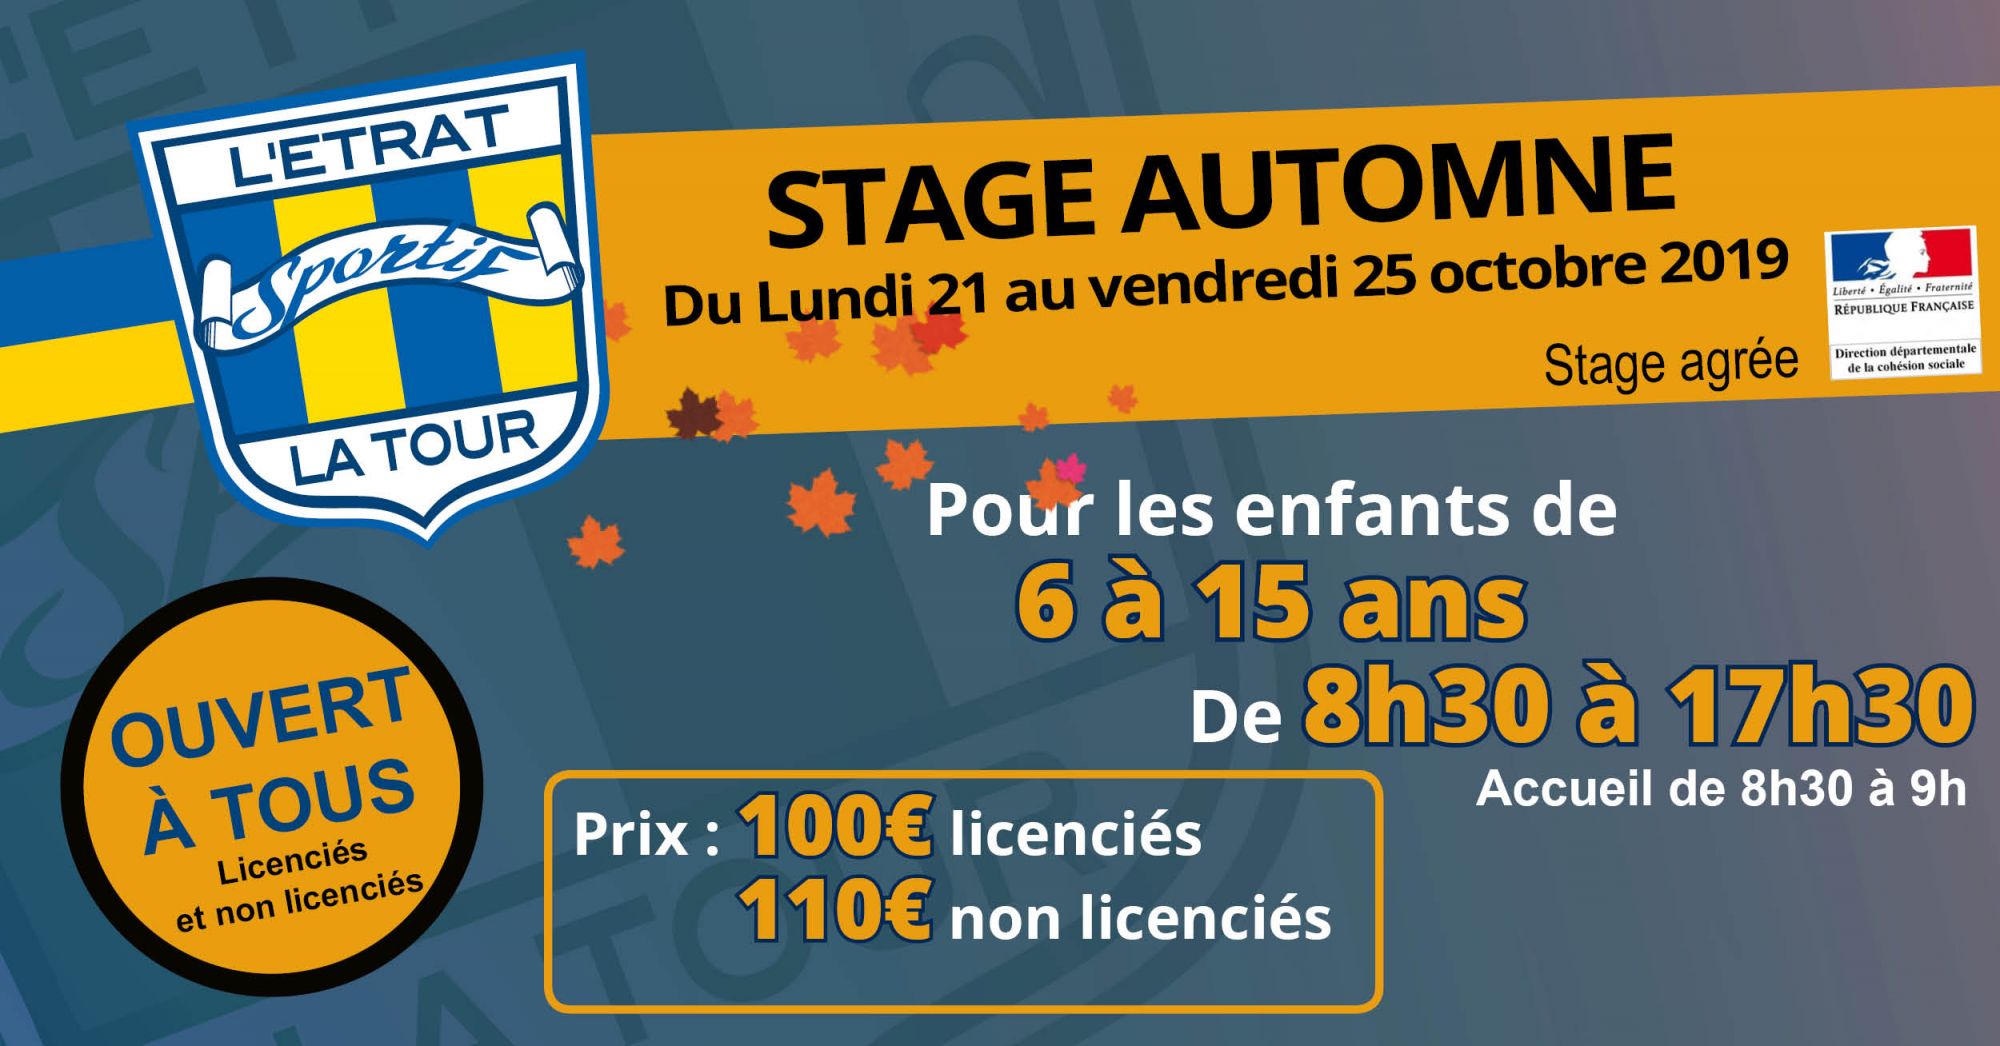 [VACANCES AUTOMNE] Stage L'Etrat la Tour Sportif 2019-2020 